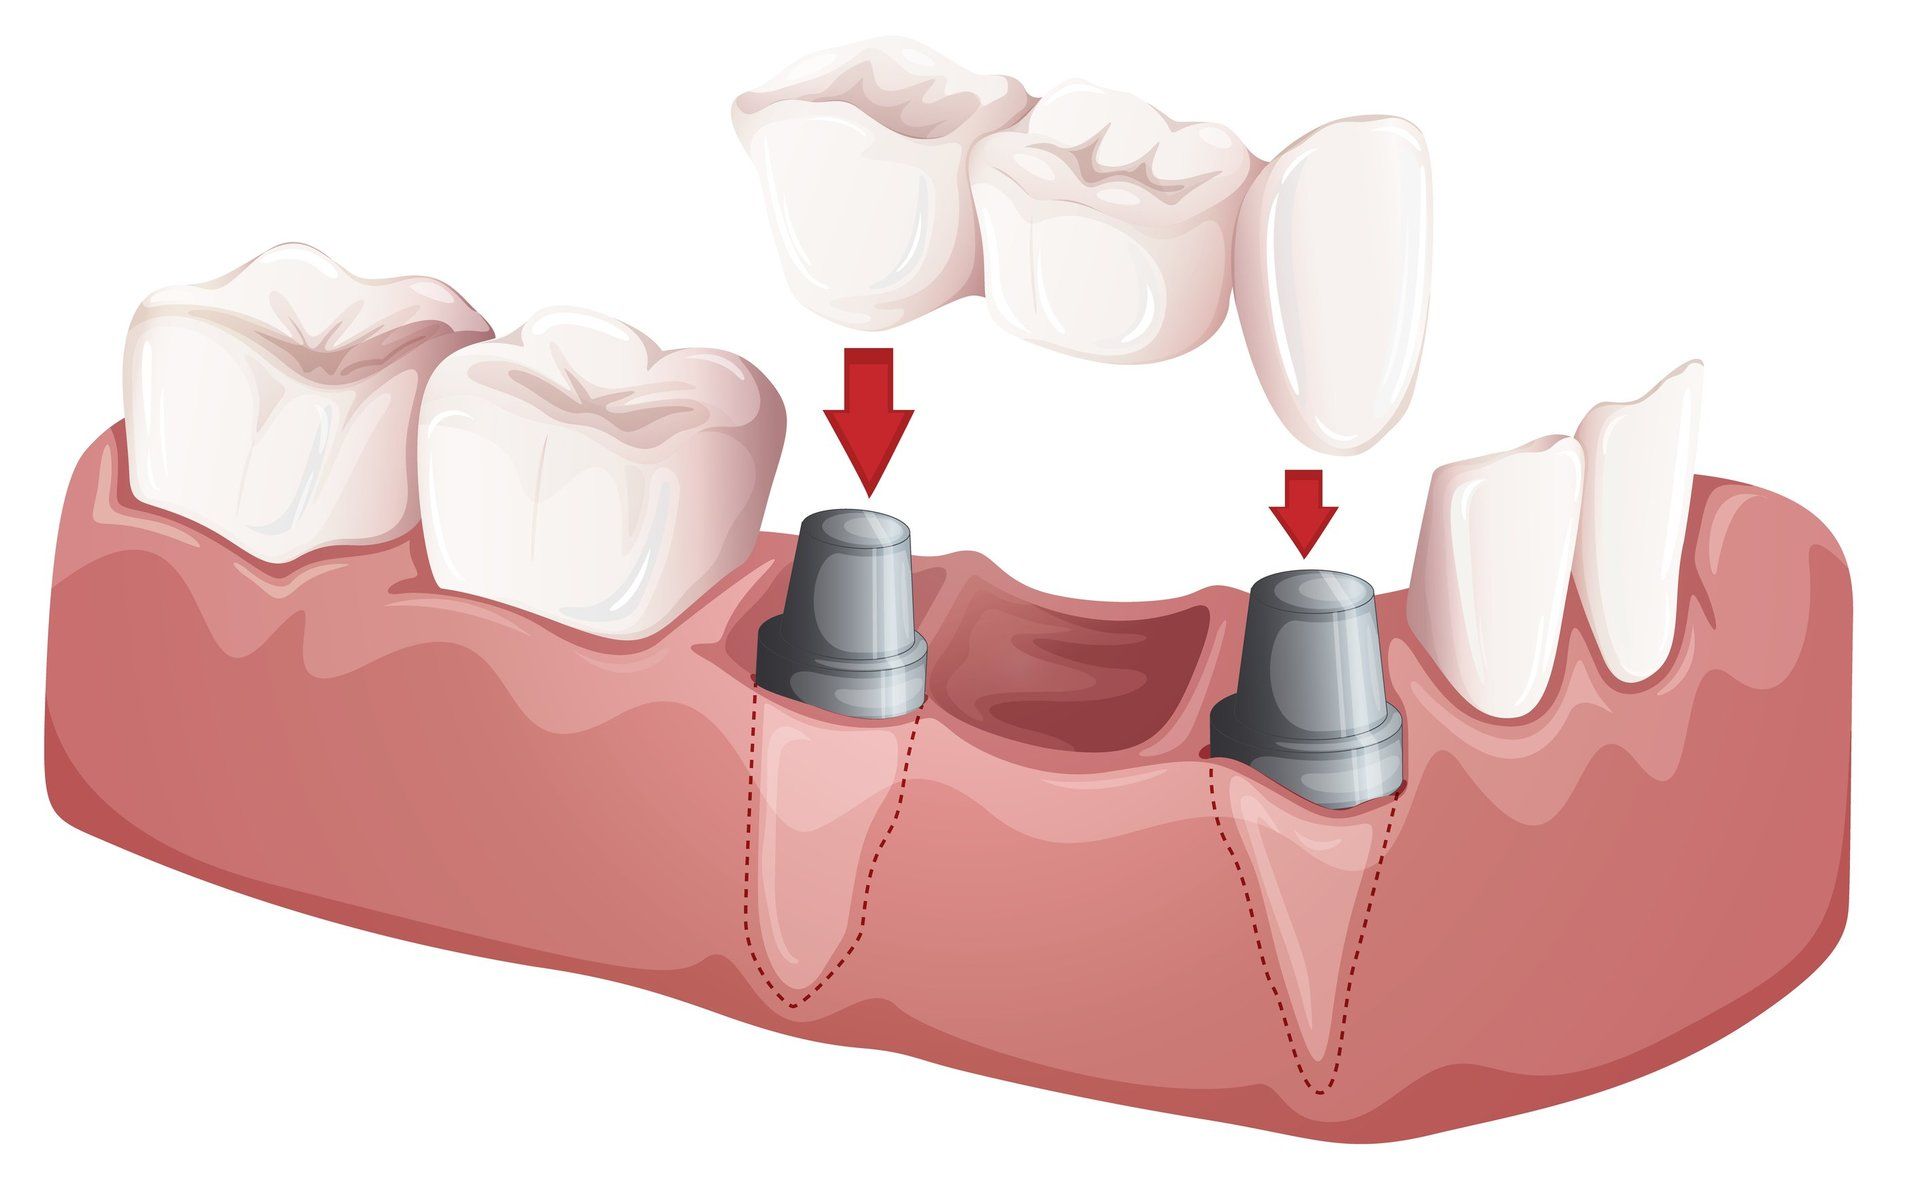 model of a dental bridge for bridges procedures